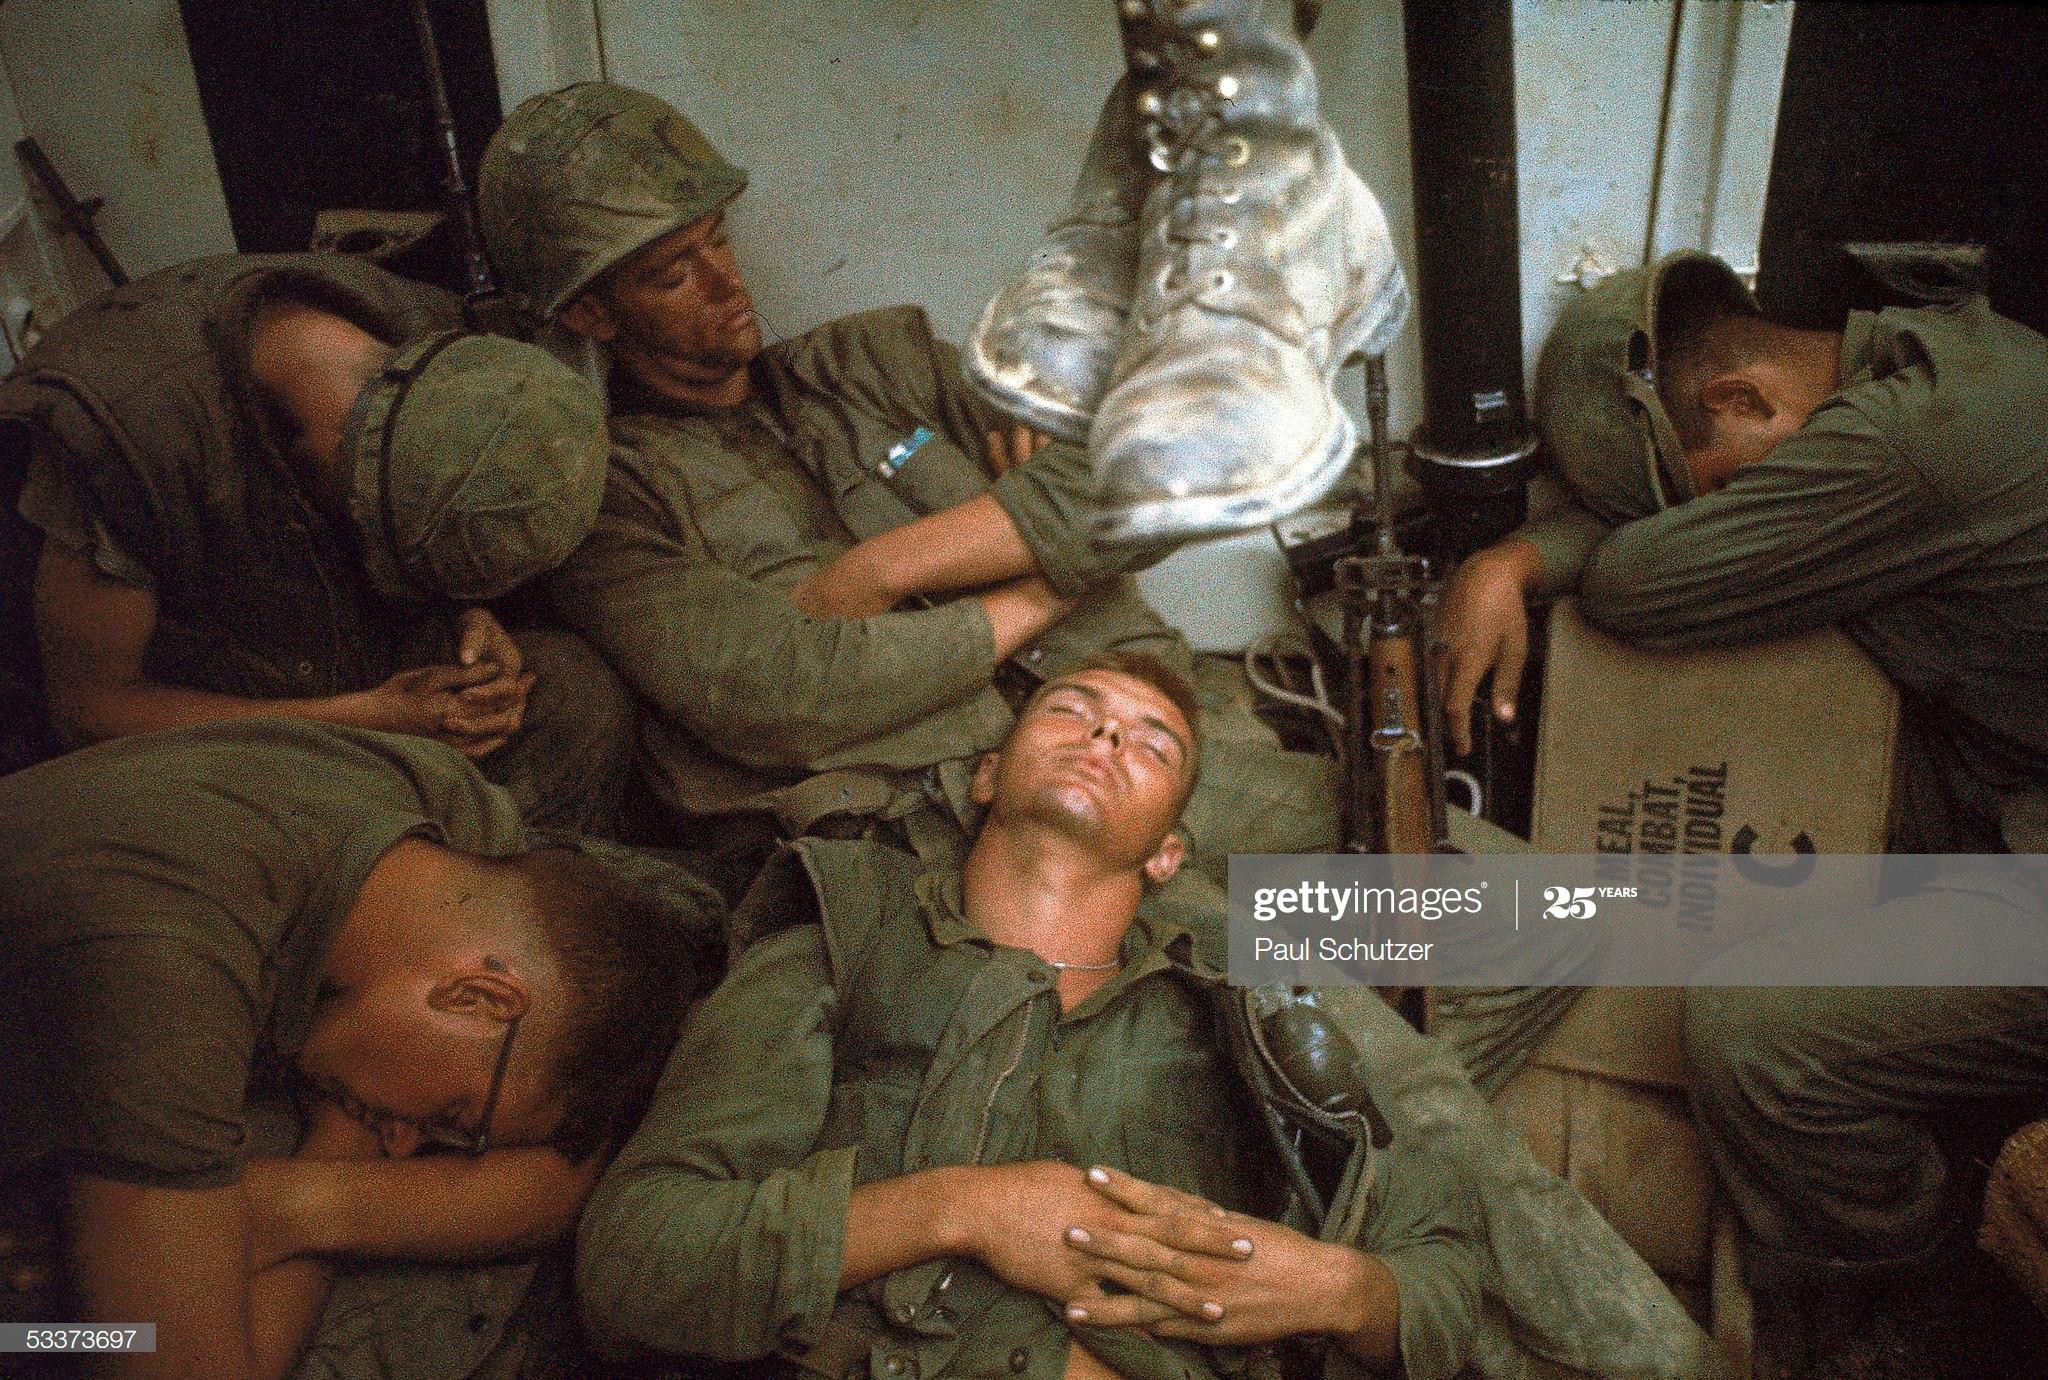 Ảnh độc: Giấc ngủ của lính Mỹ trong chiến tranh Việt Nam Ảnh 1